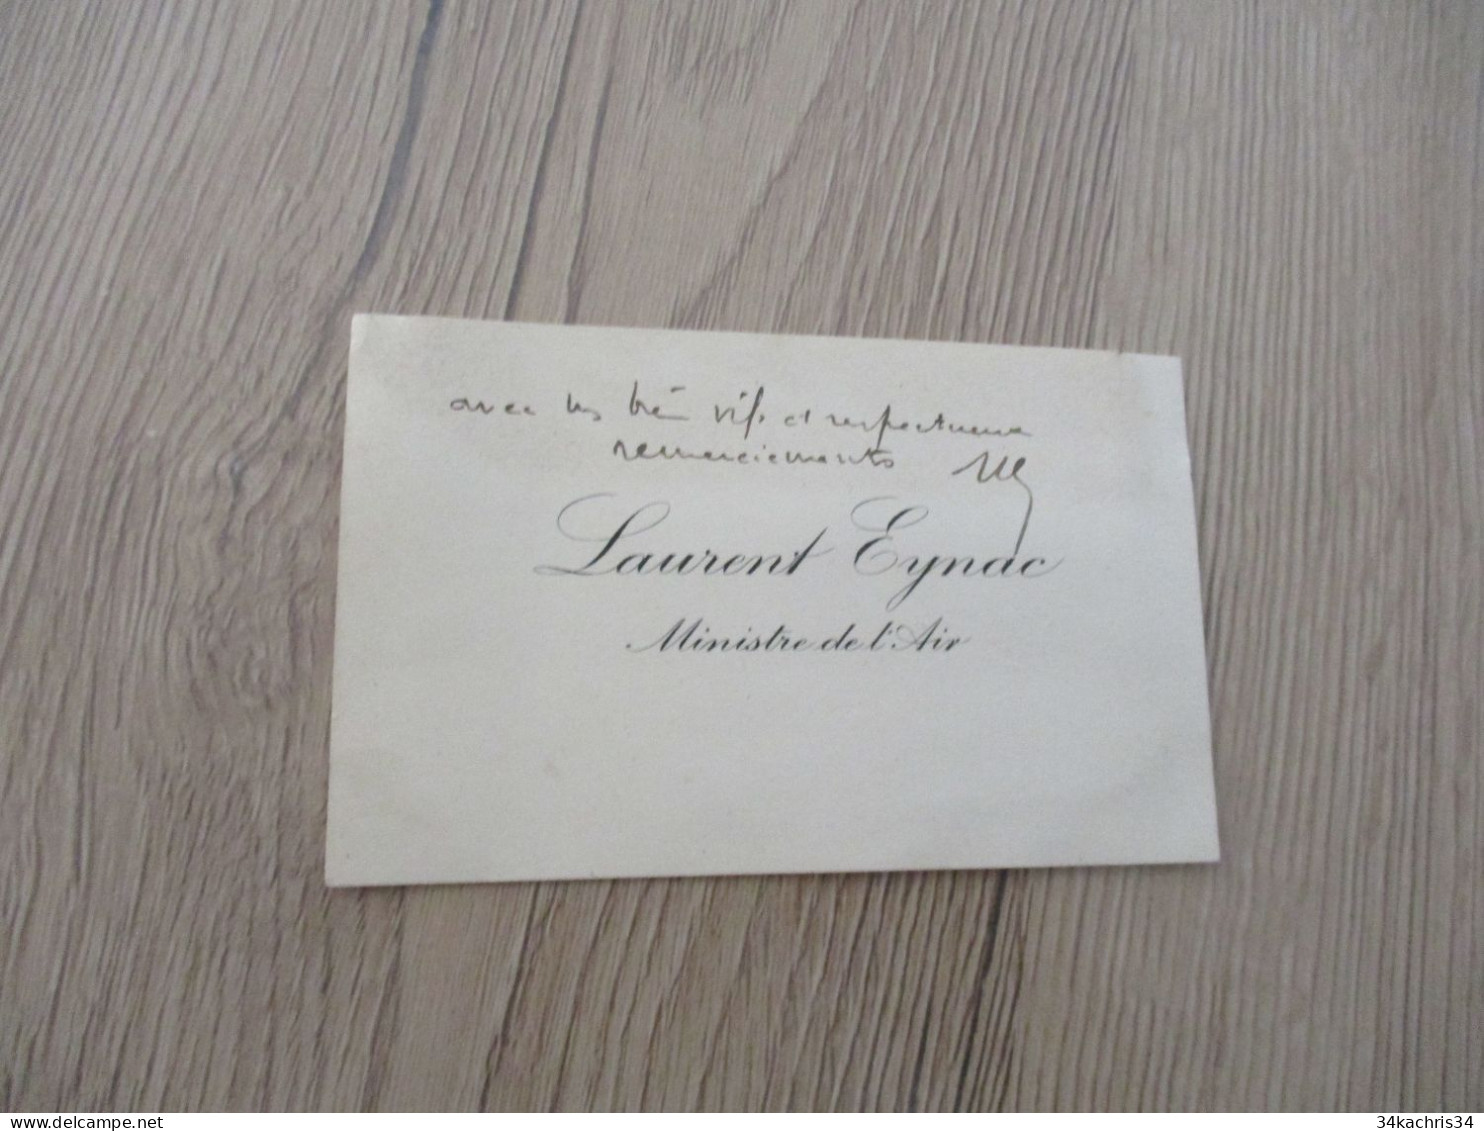 Carte De Visite Signée Laurent Eynac Ministre E L'Air - Visiting Cards